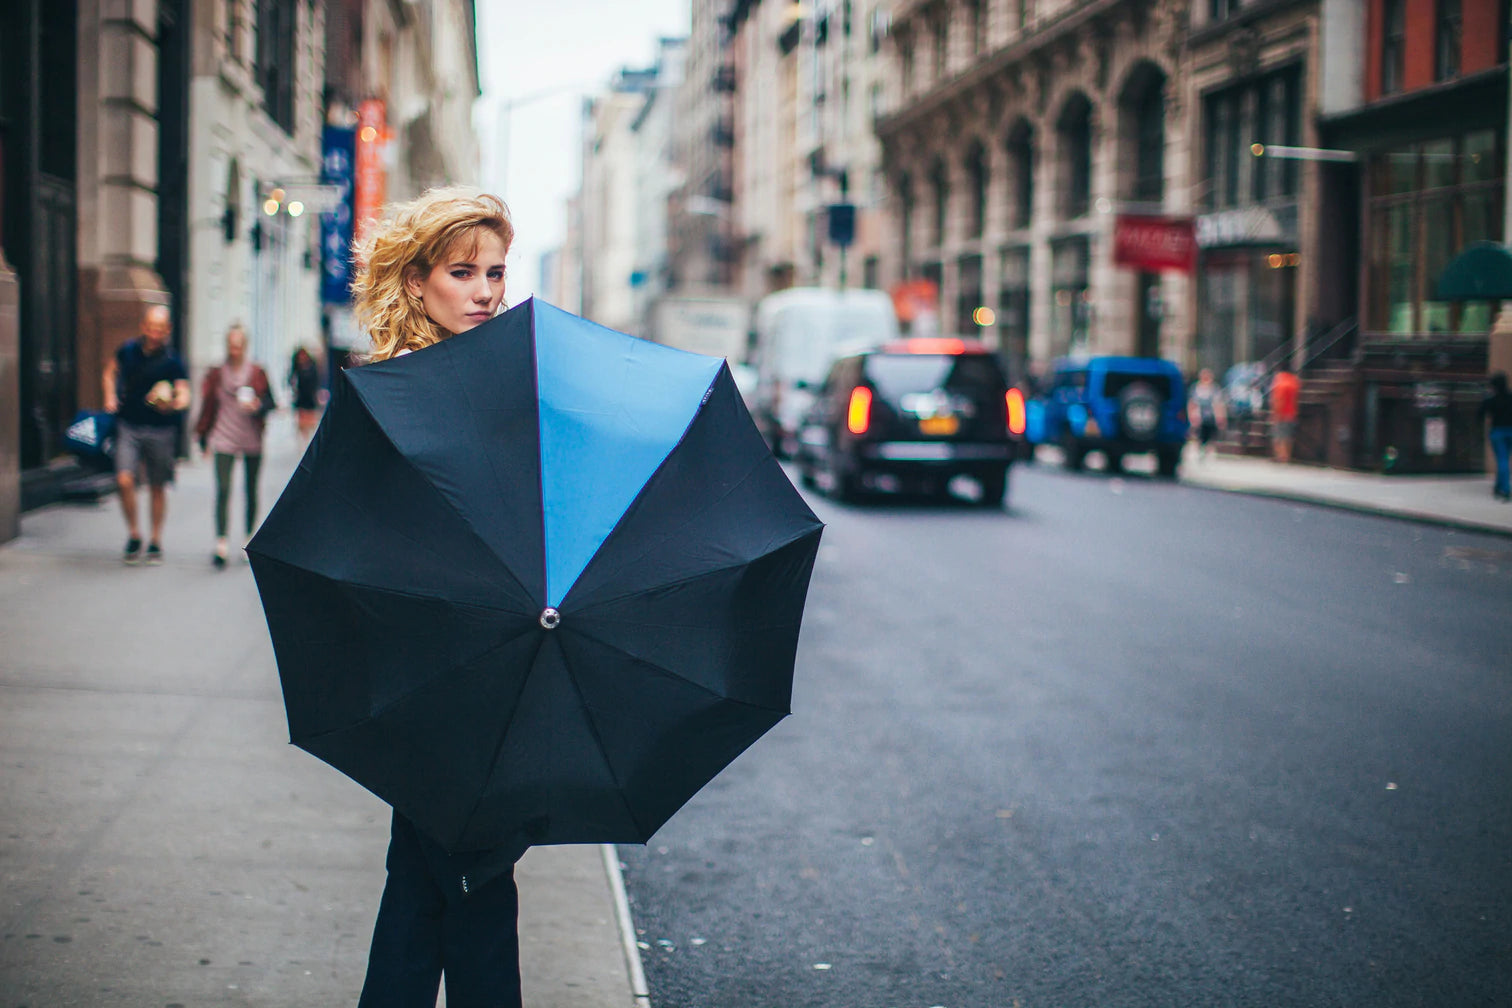 Davek Solo Umbrella | High Quality Umbrella | Wind Resistant Umbrella